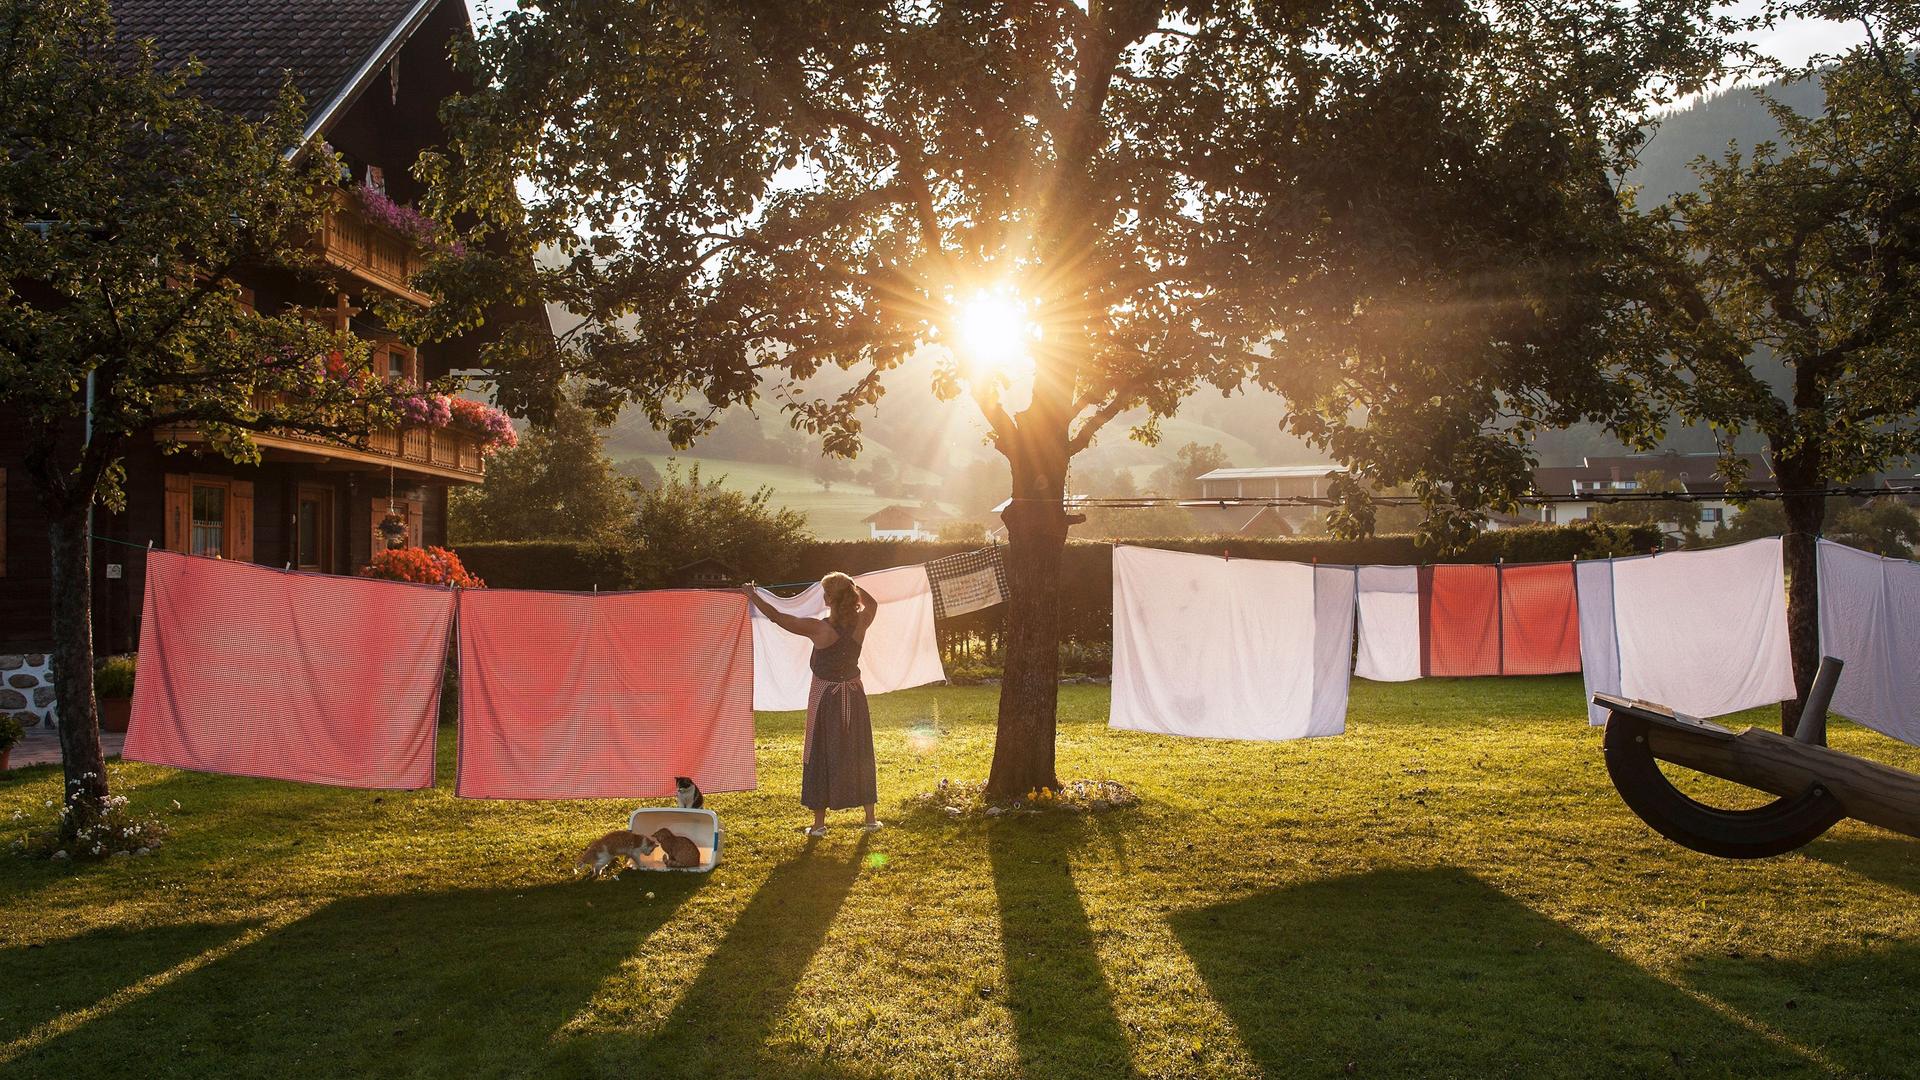 Ein Frau hängt in einem Garten Wäsche auf eine Wäscheleine. Im Hintergrund steht ein traditionelles österreichisches Haus. Die Sonne scheint und es ist warm.